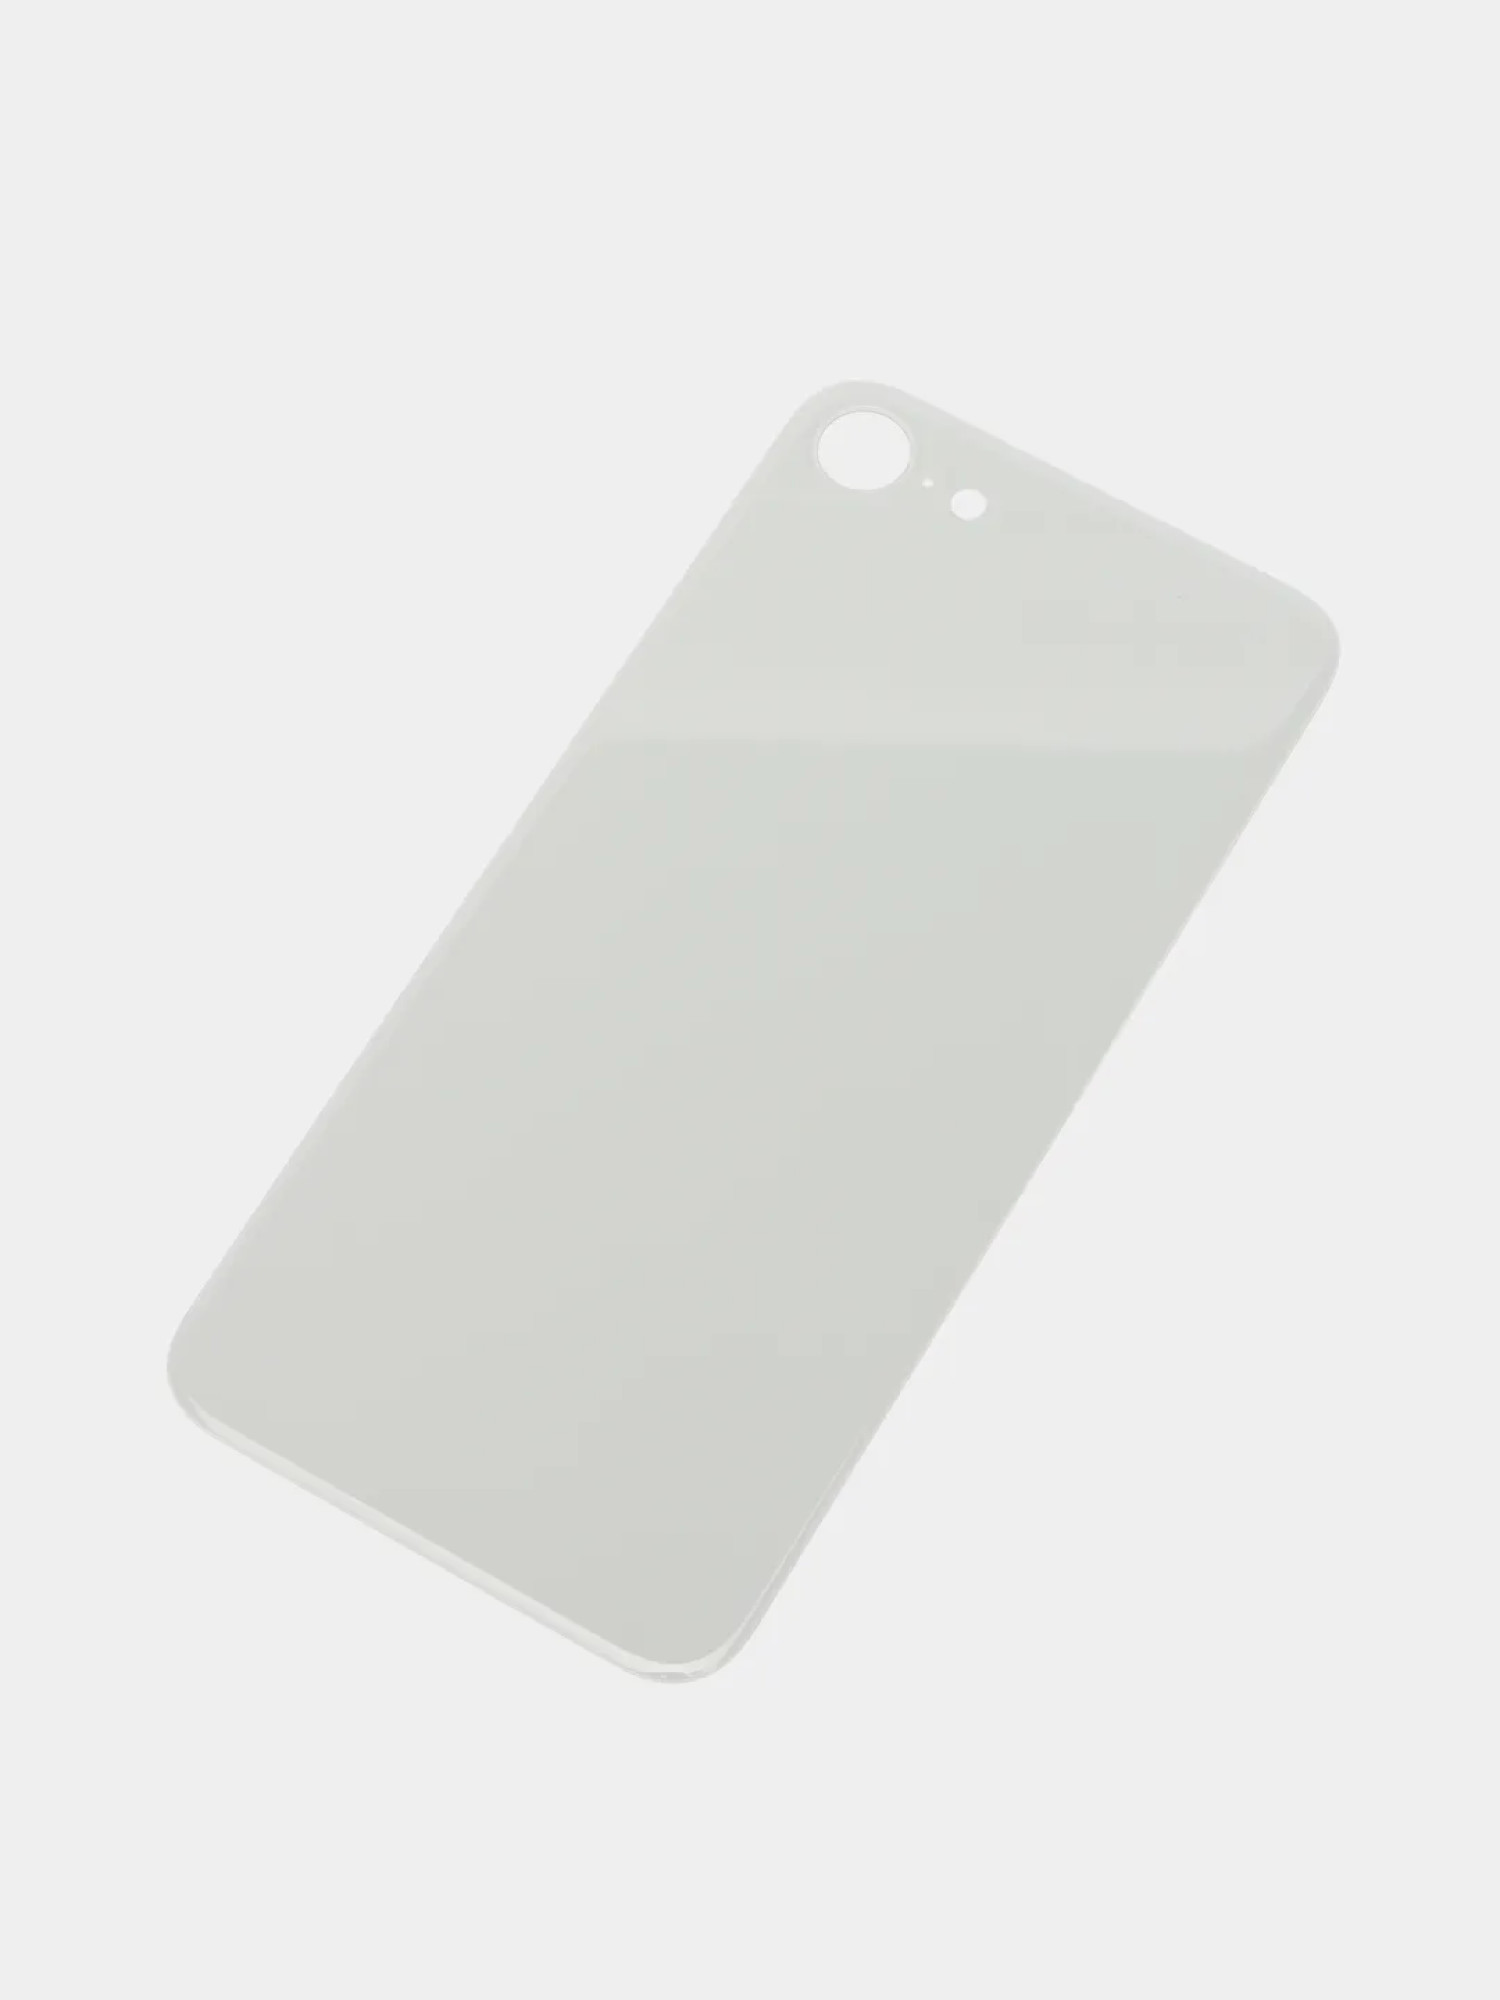 Задняя крышка для Apple iPhone SE 2020 (широкое отверстие под камеру), белая - фото